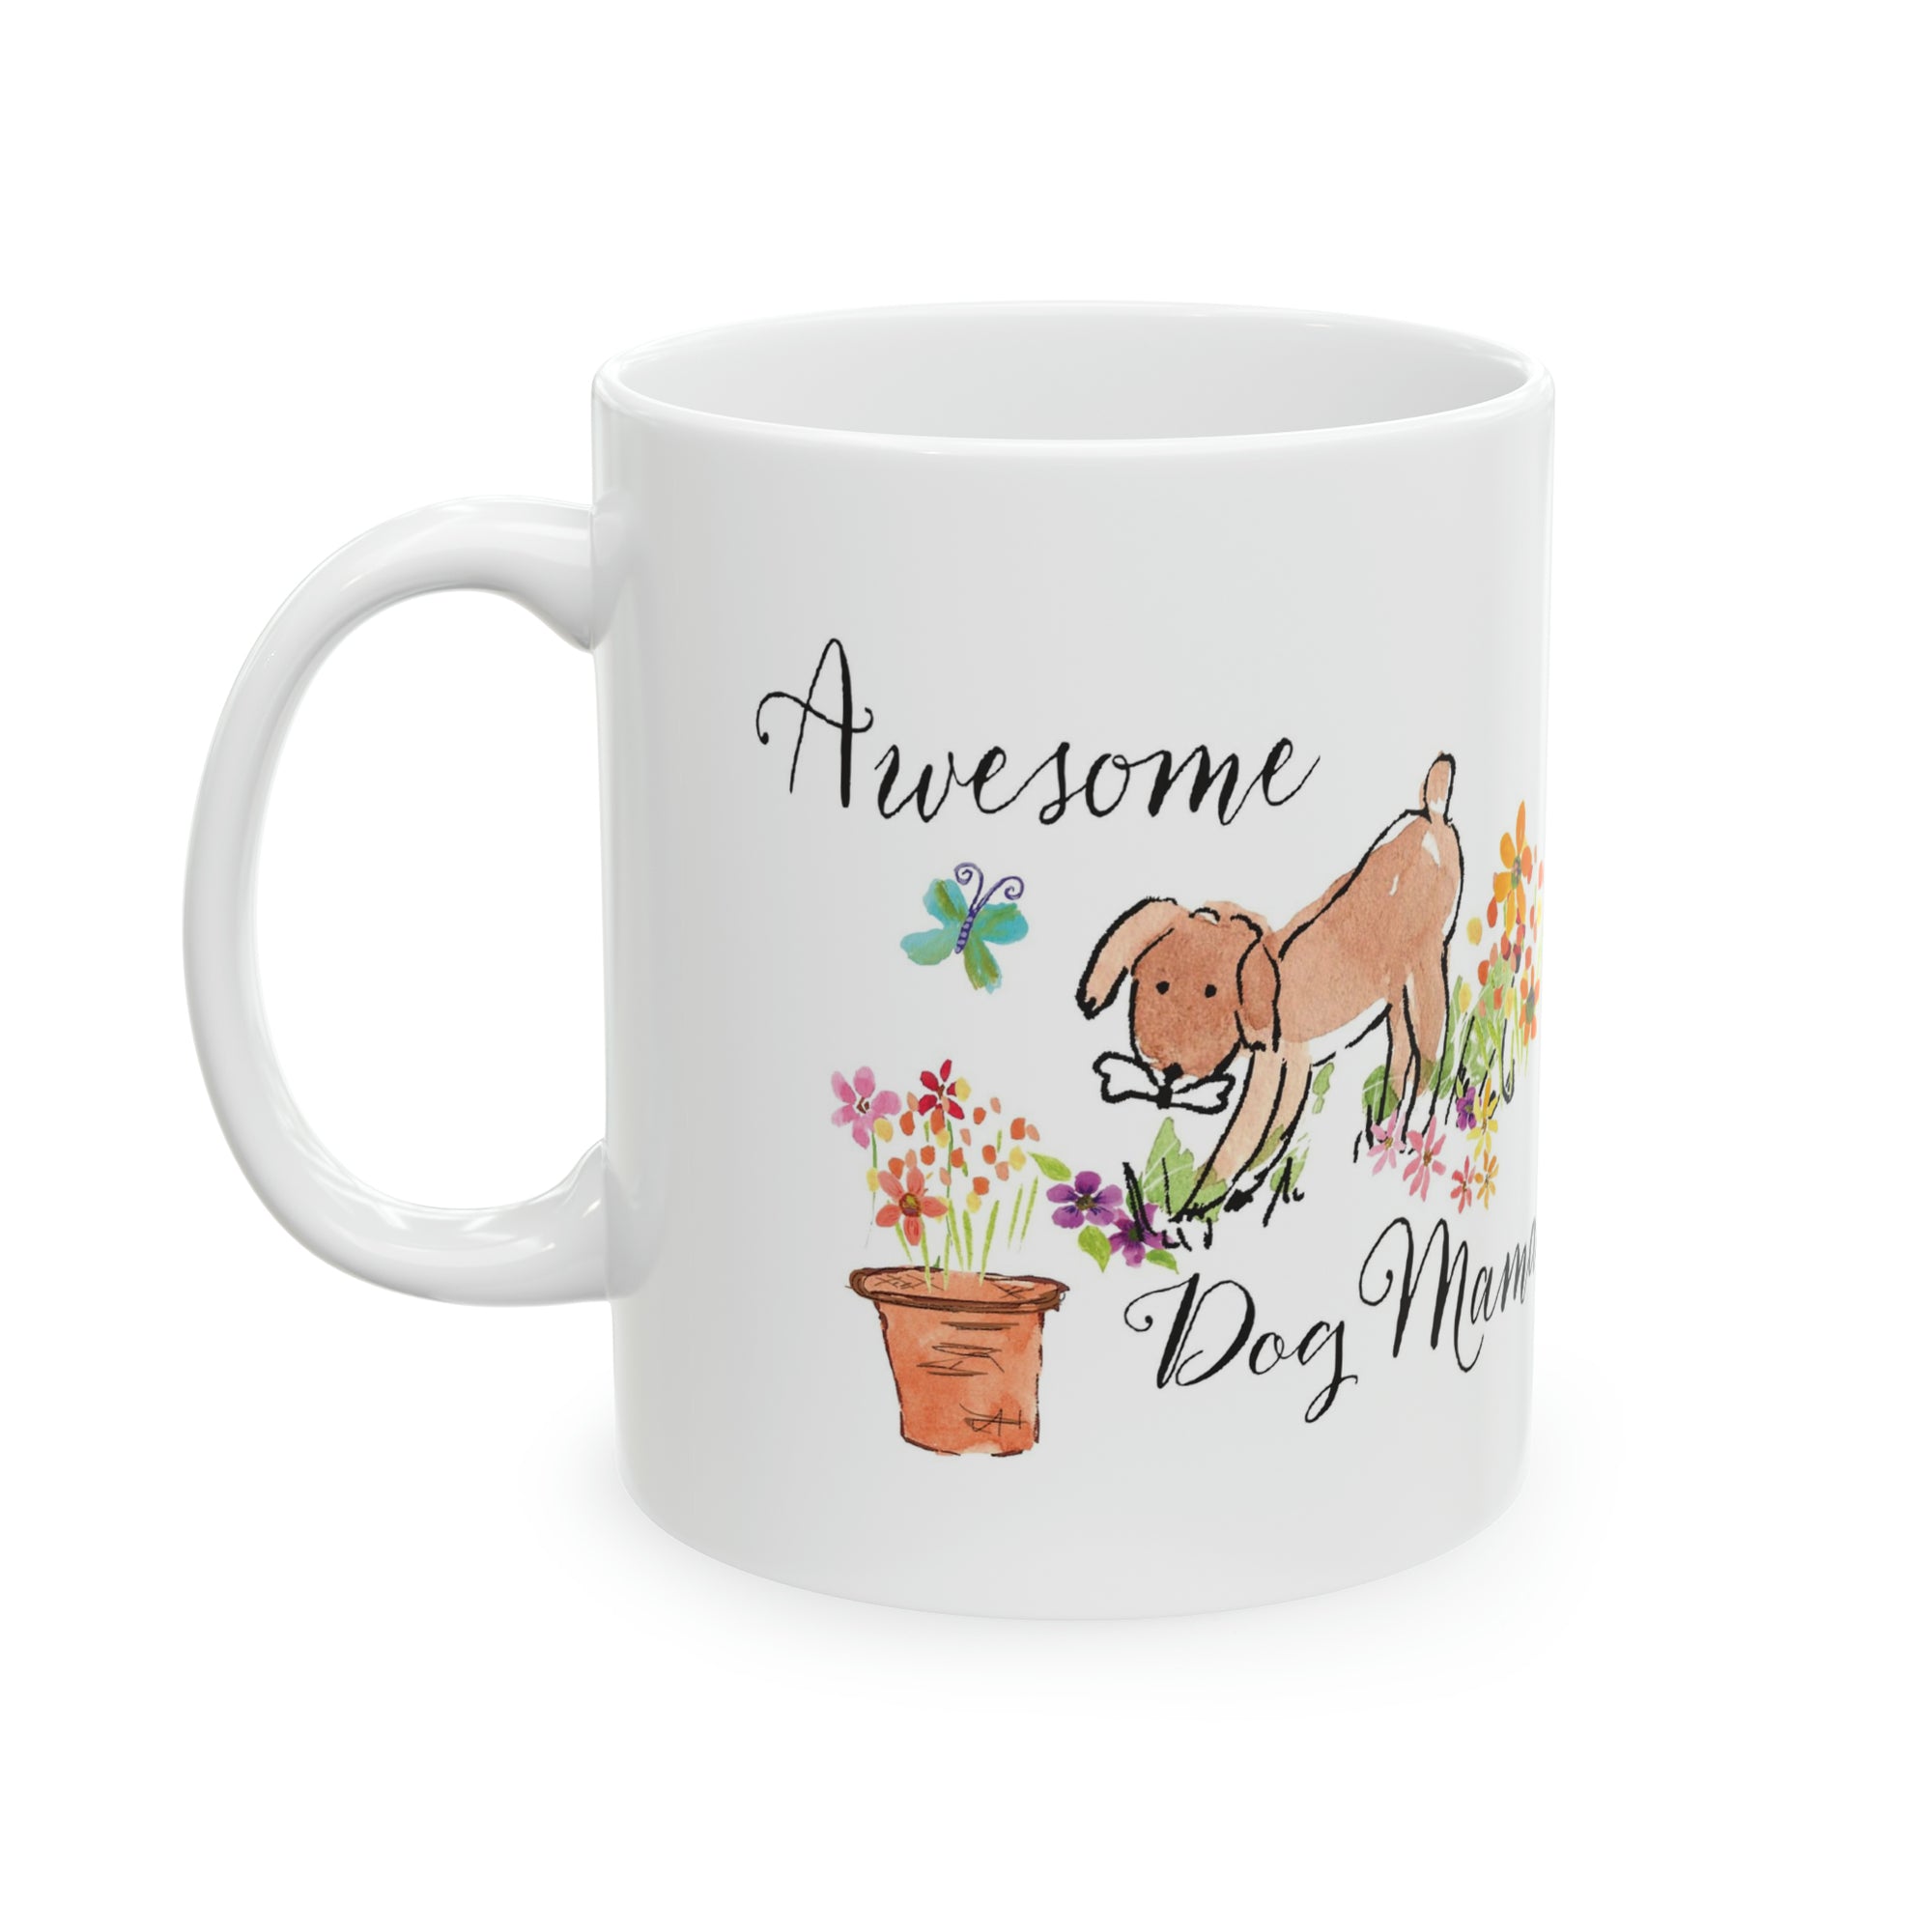 Awesome Dog Mama Ceramic Mug, 11oz